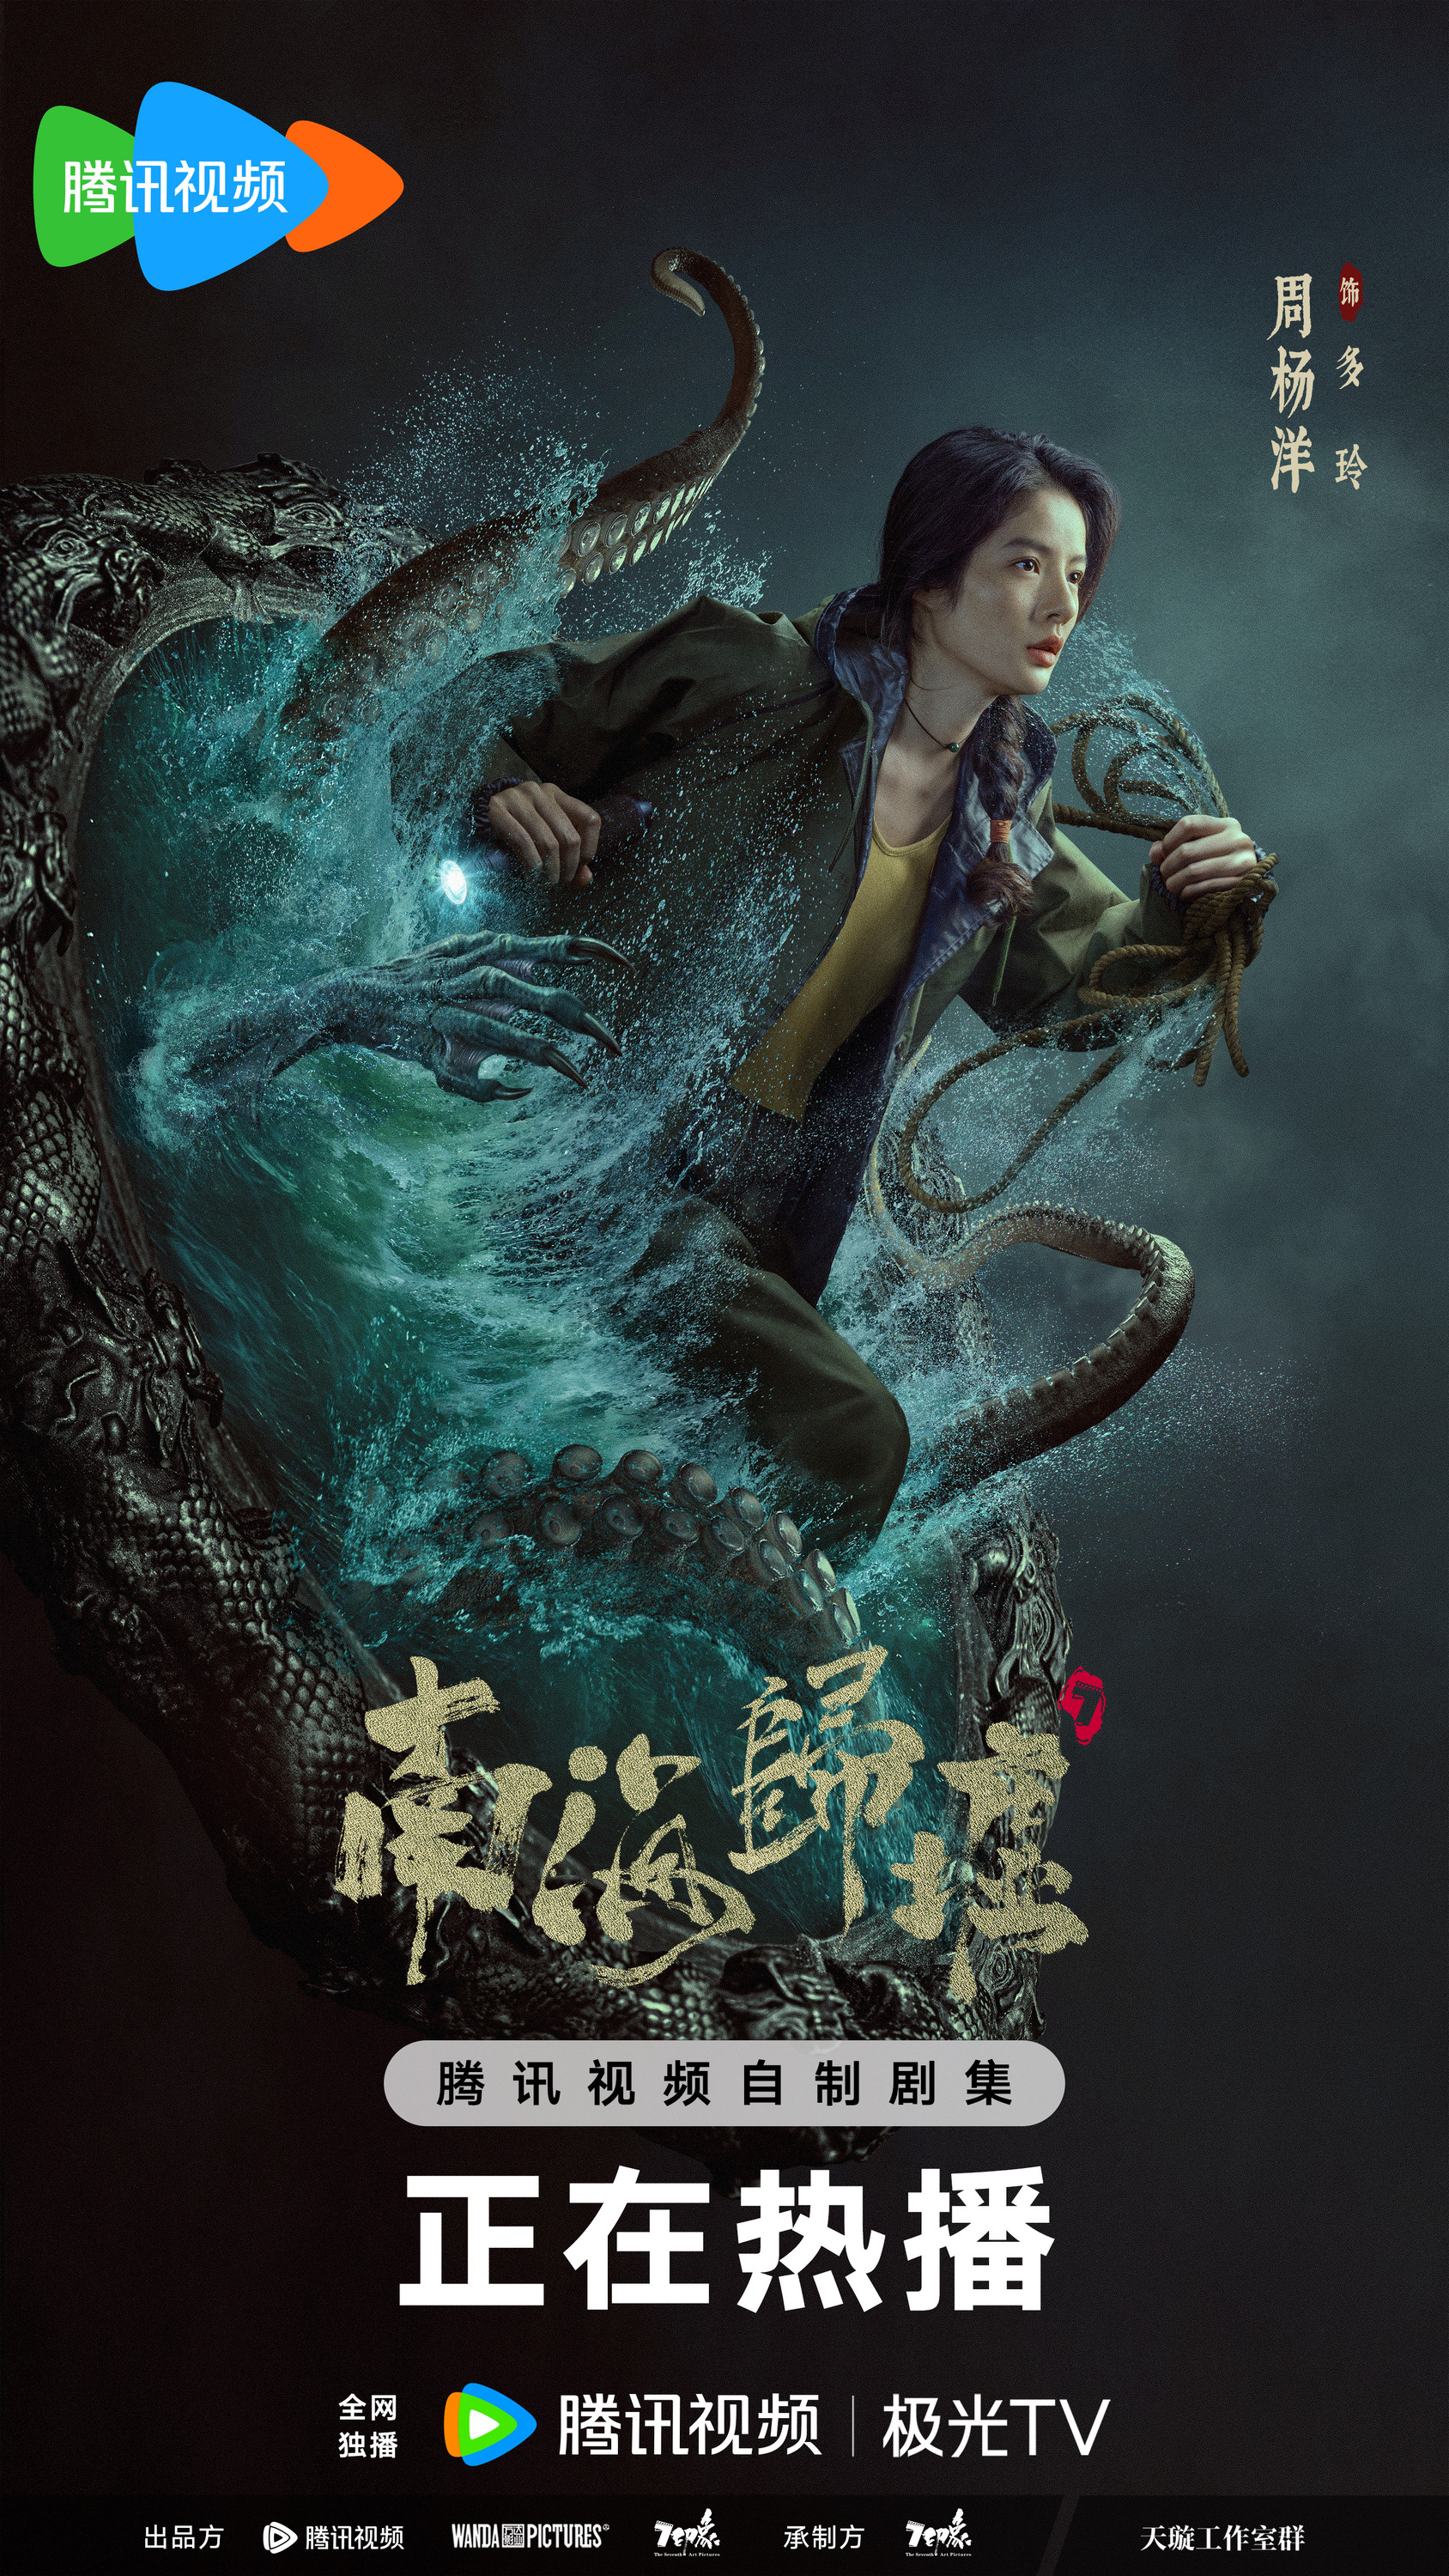 Mega Sized TV Poster Image for Nan hai gui xu (#3 of 6)